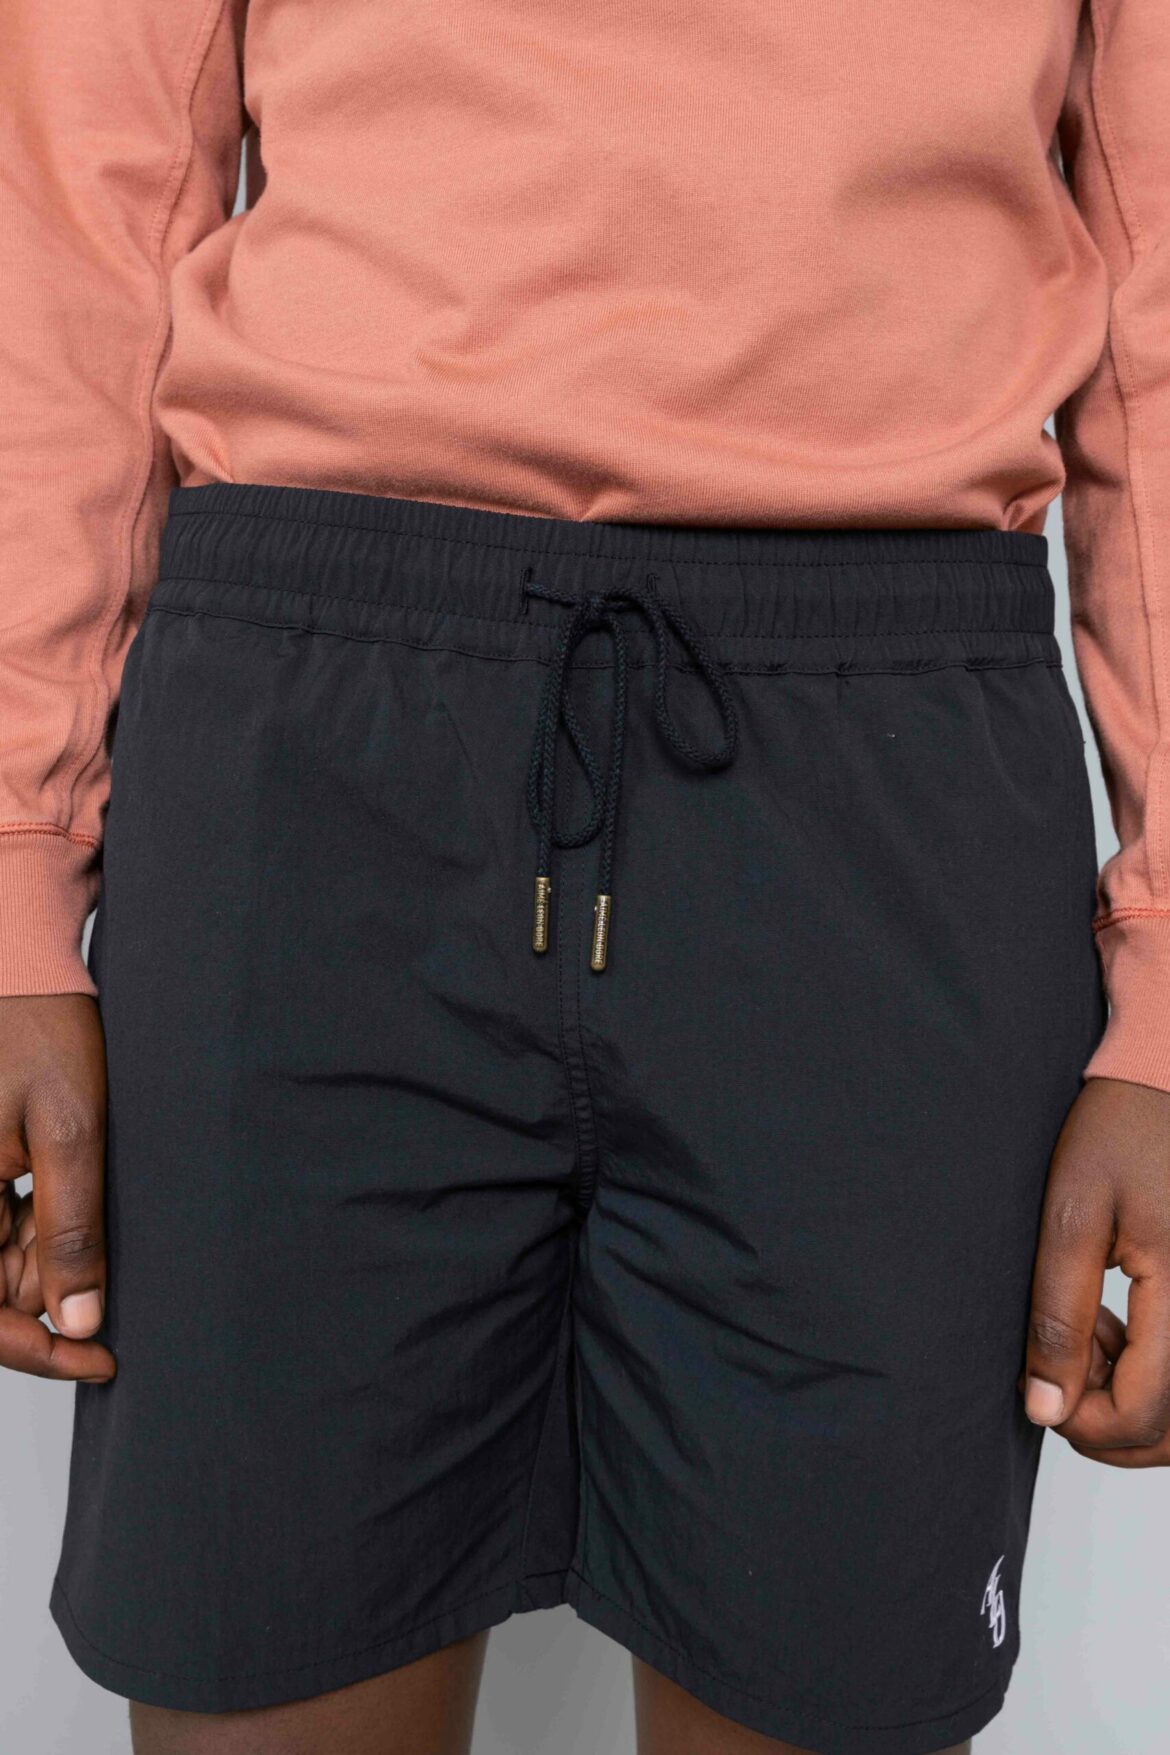 Nylon Monogram Shorts Black